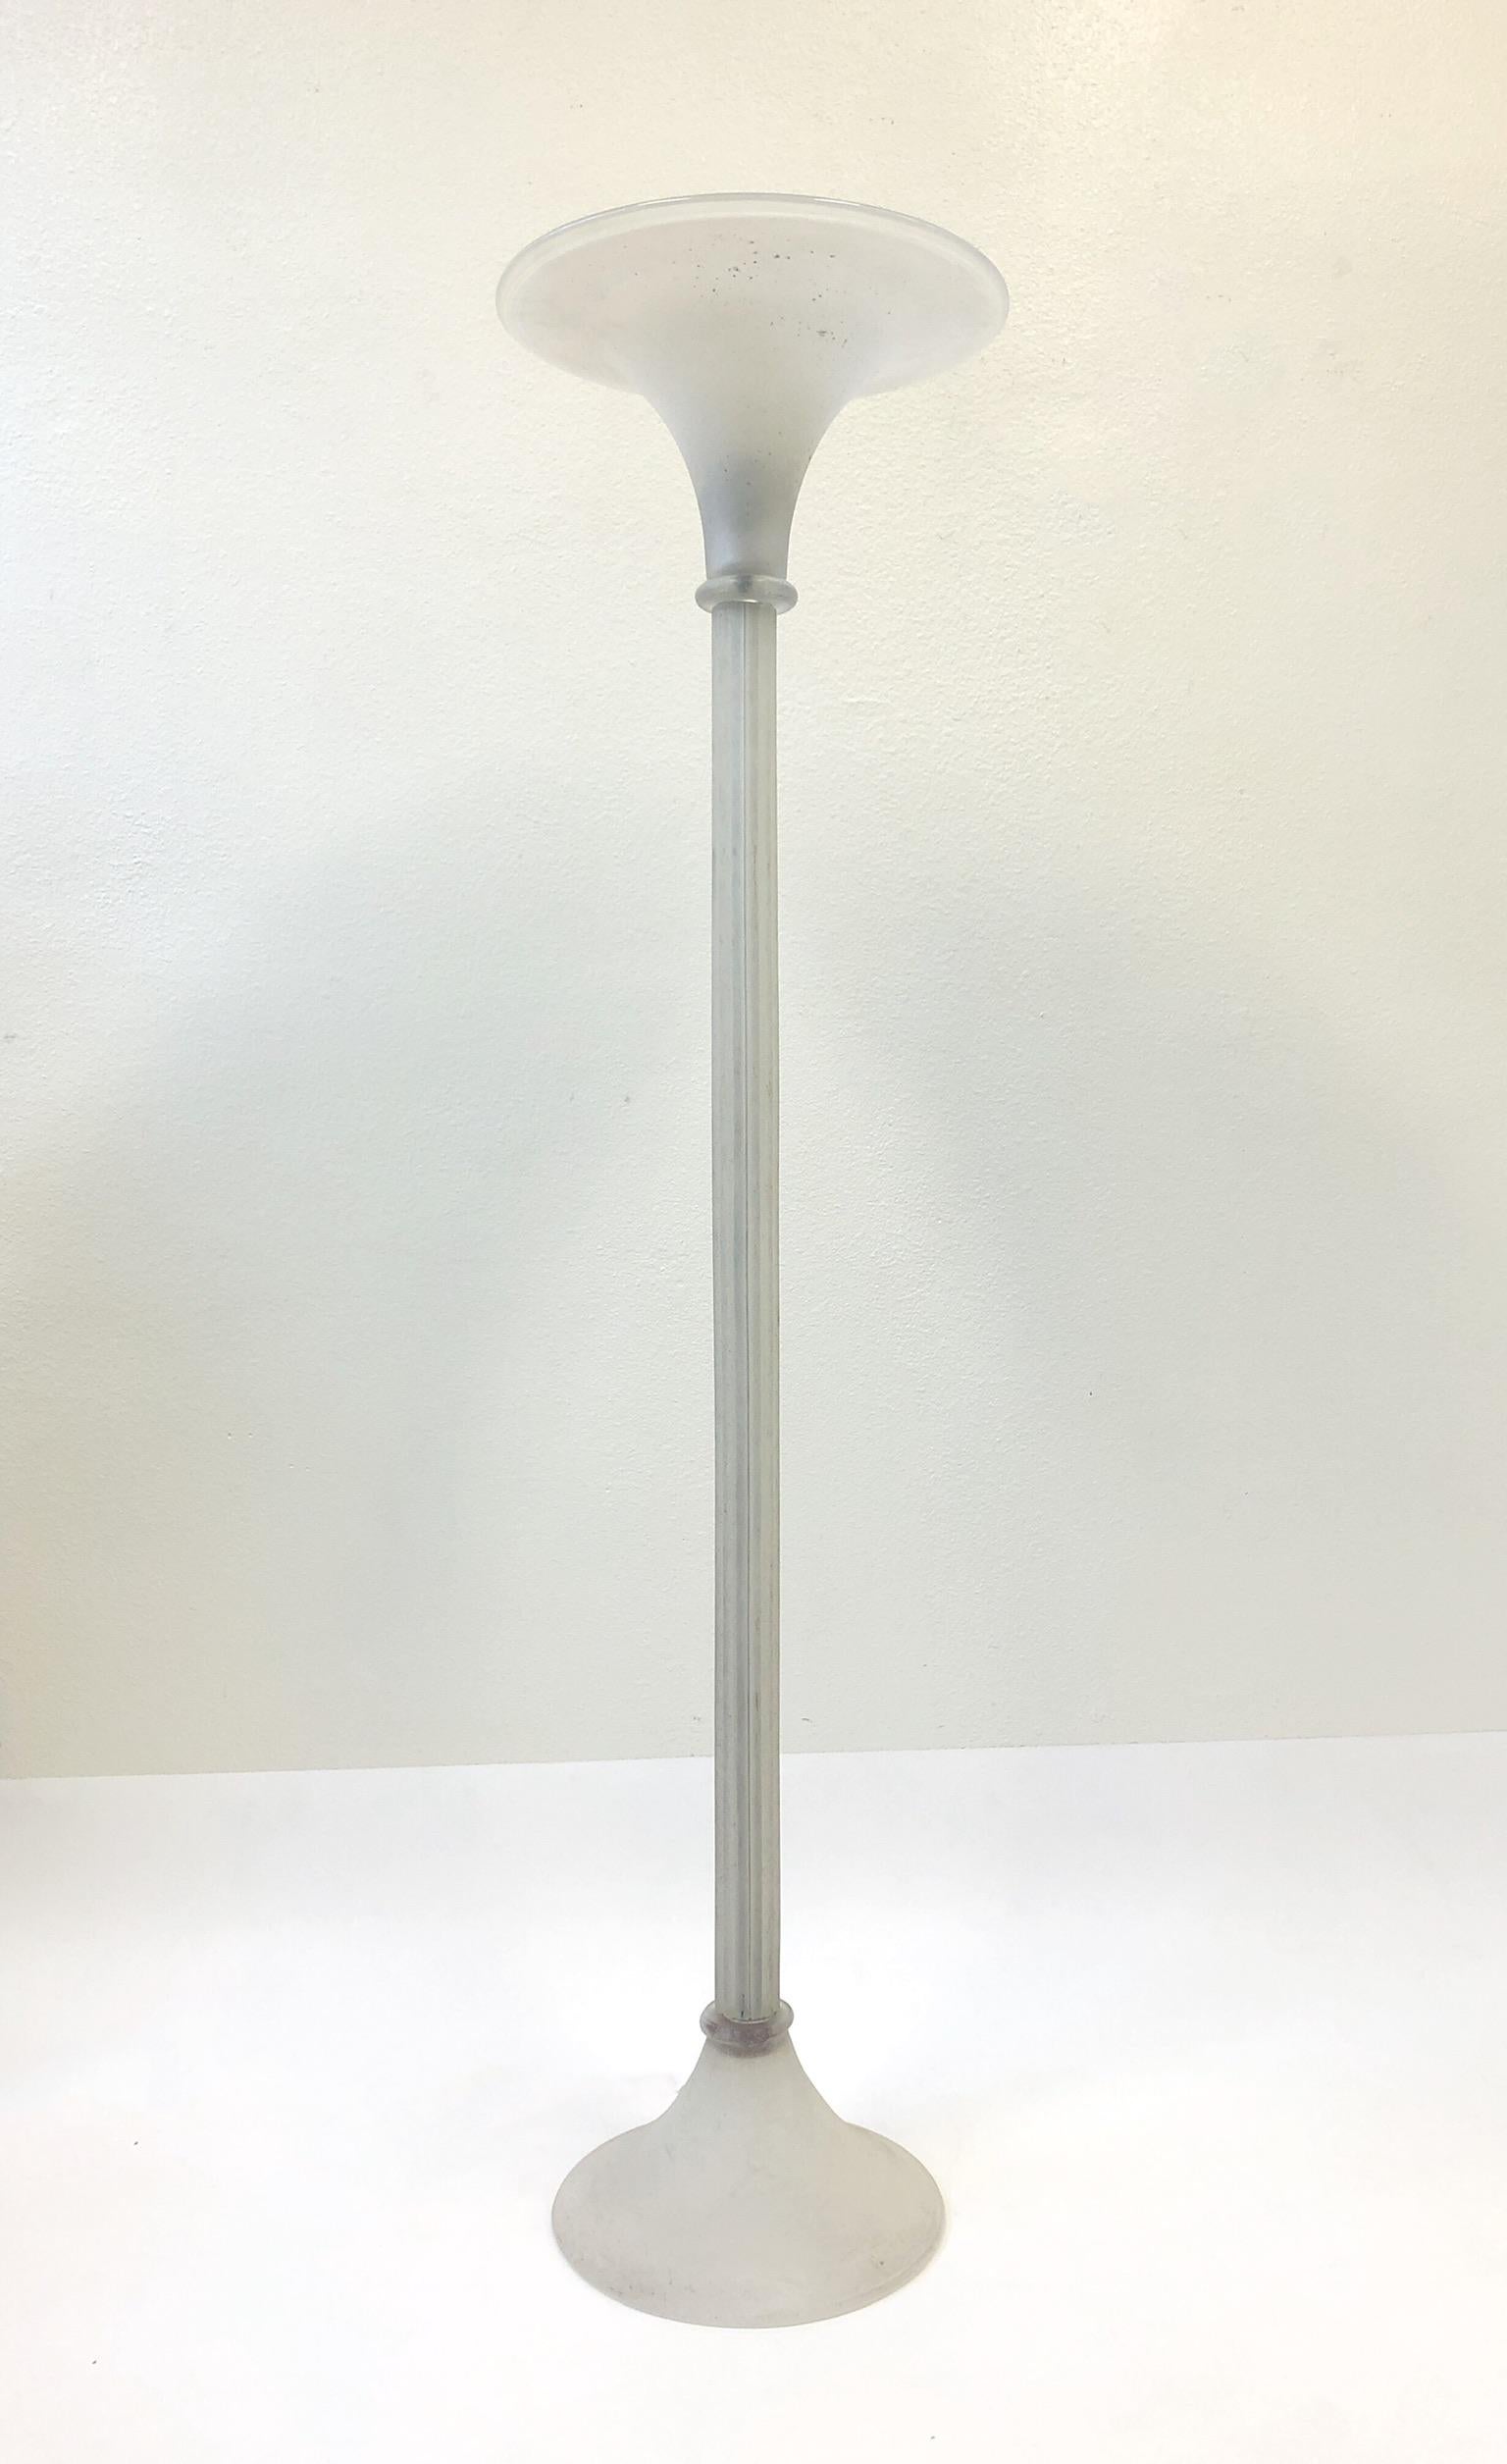 Un lampadaire torchère glamour en verre scavo de Murano conçu par Karl Springer dans les années 1980 pour Seguso Italie.
La lampe est signée par Karl Springer. La lampe fonctionne avec une ampoule Edison ordinaire et dispose d'un variateur